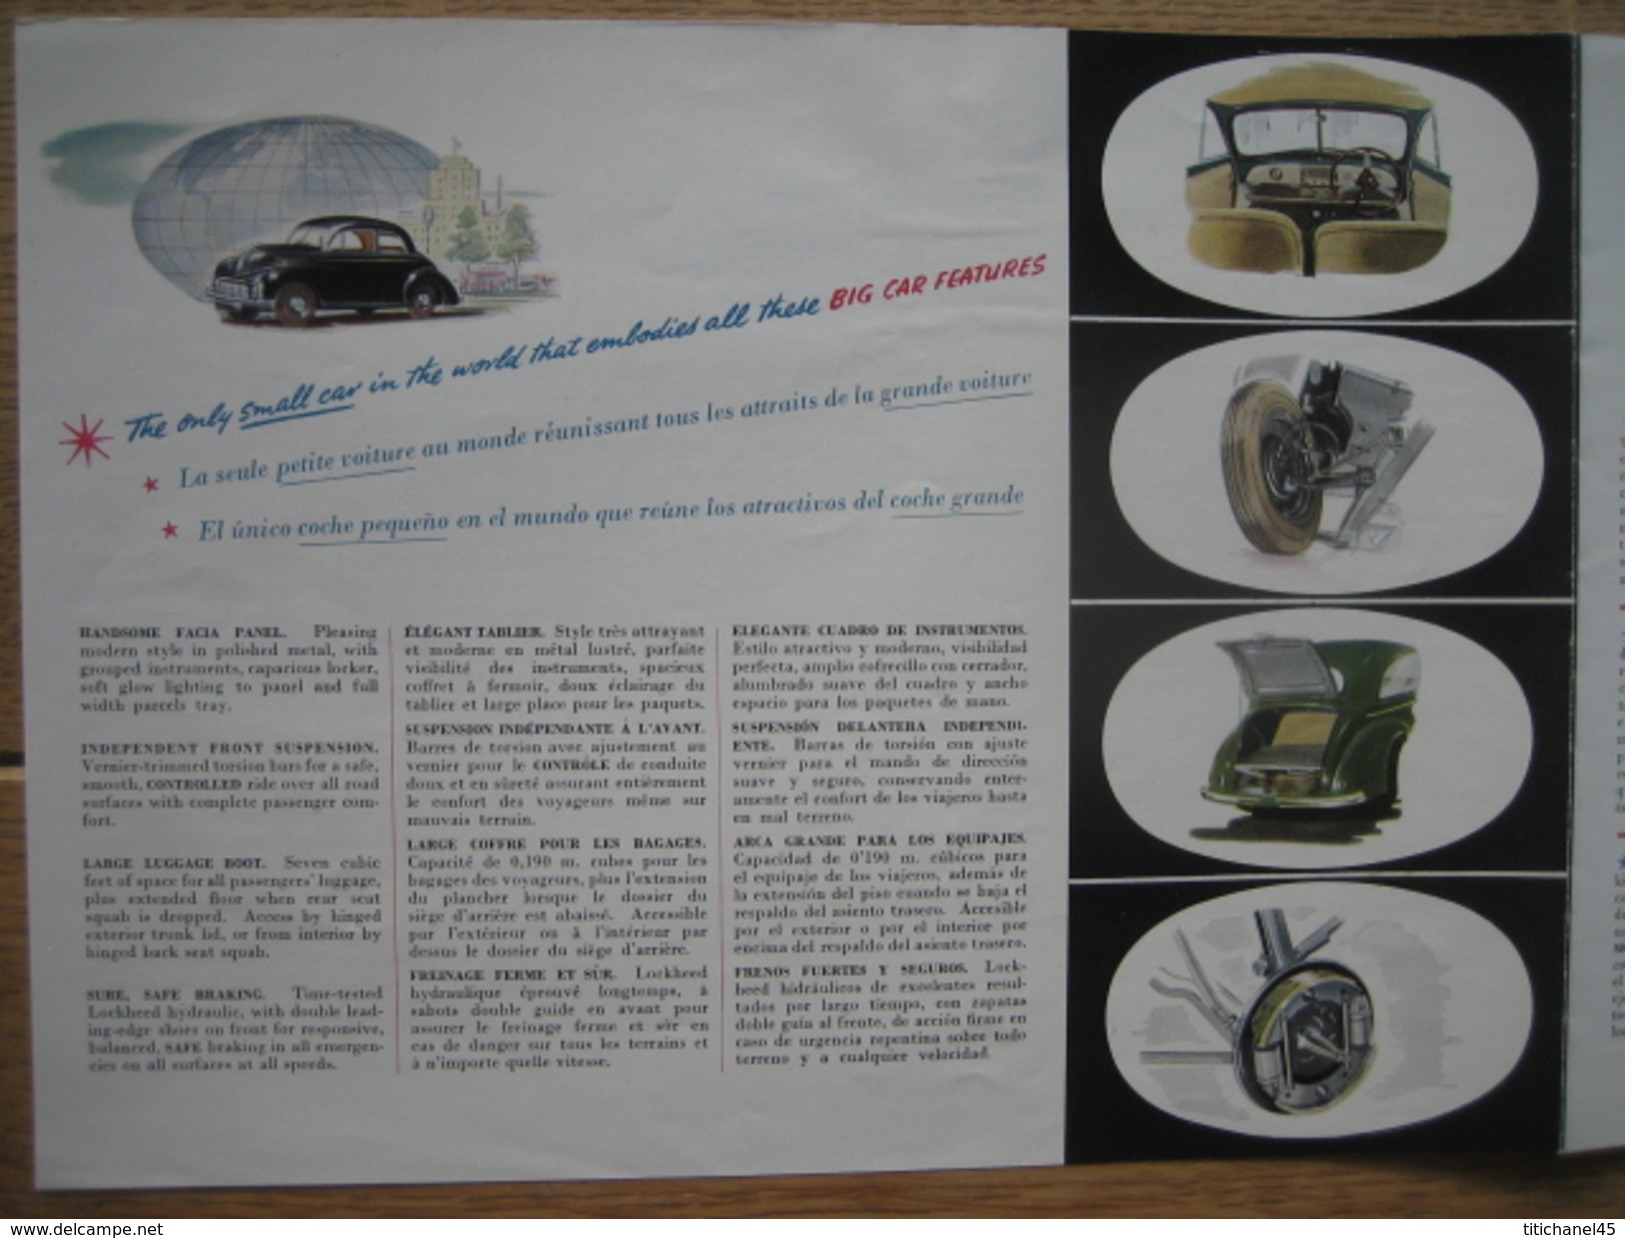 Dépliant publicitaire de 1948 Automobile MORRIS MINOR - La petite voiture suprême dans le monde - 8 pages